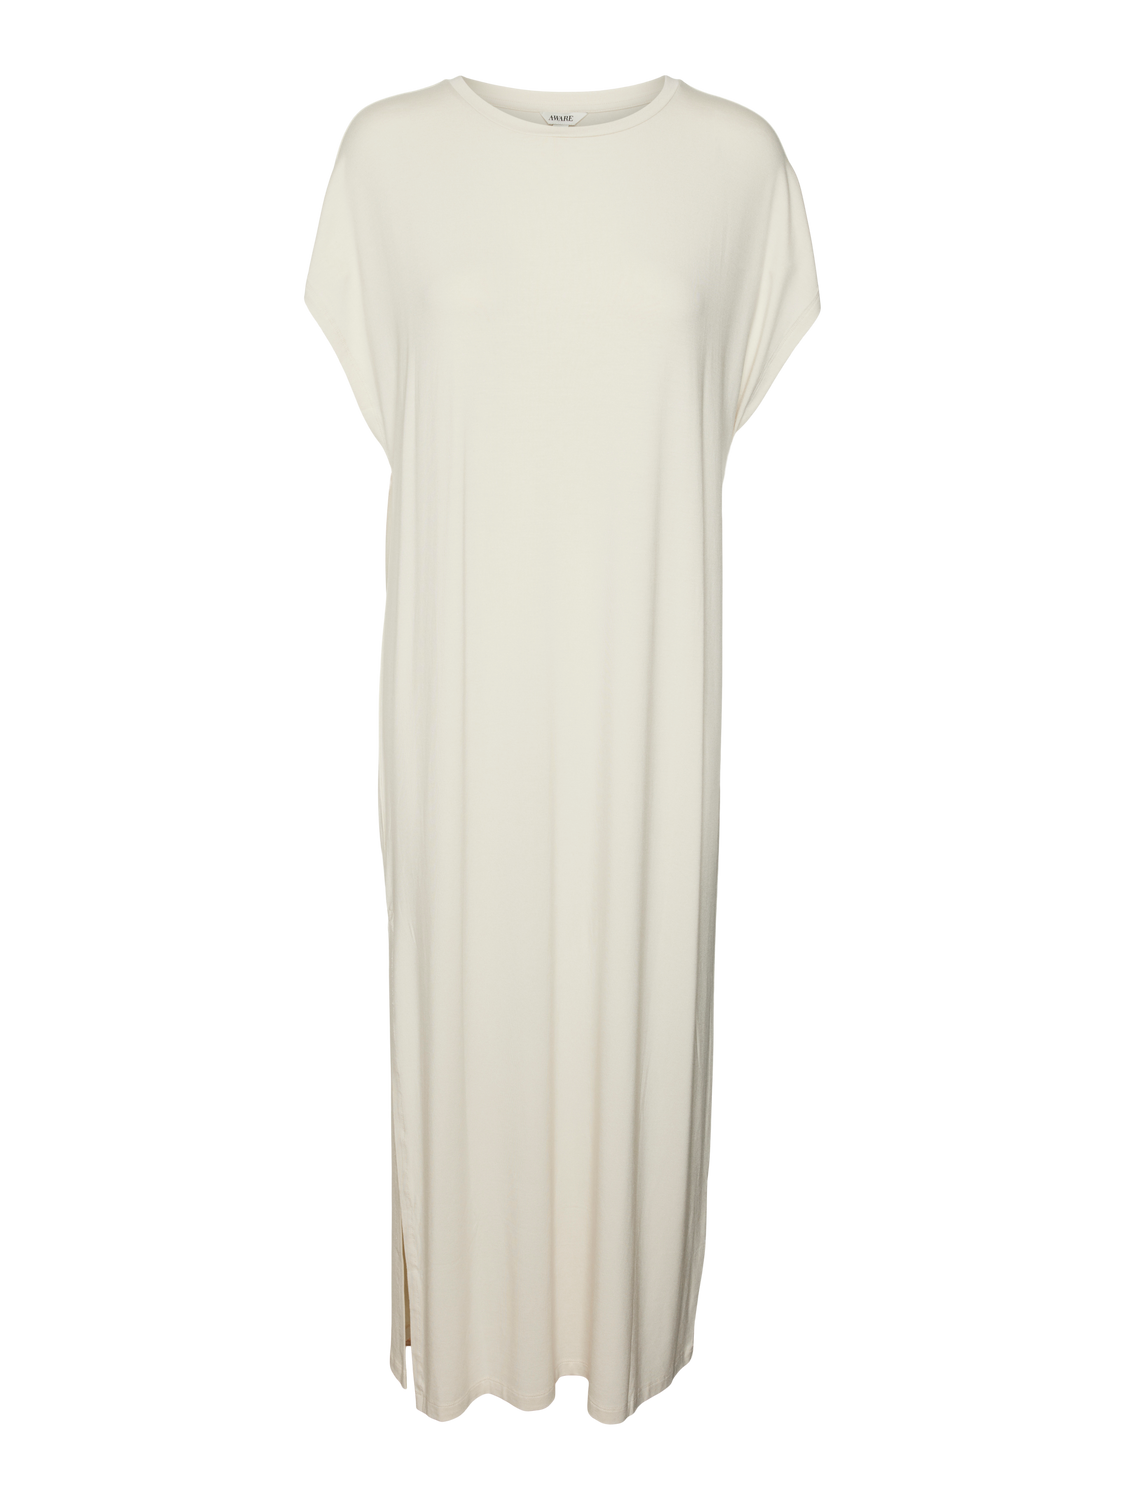 VMSINI Dress - Birch